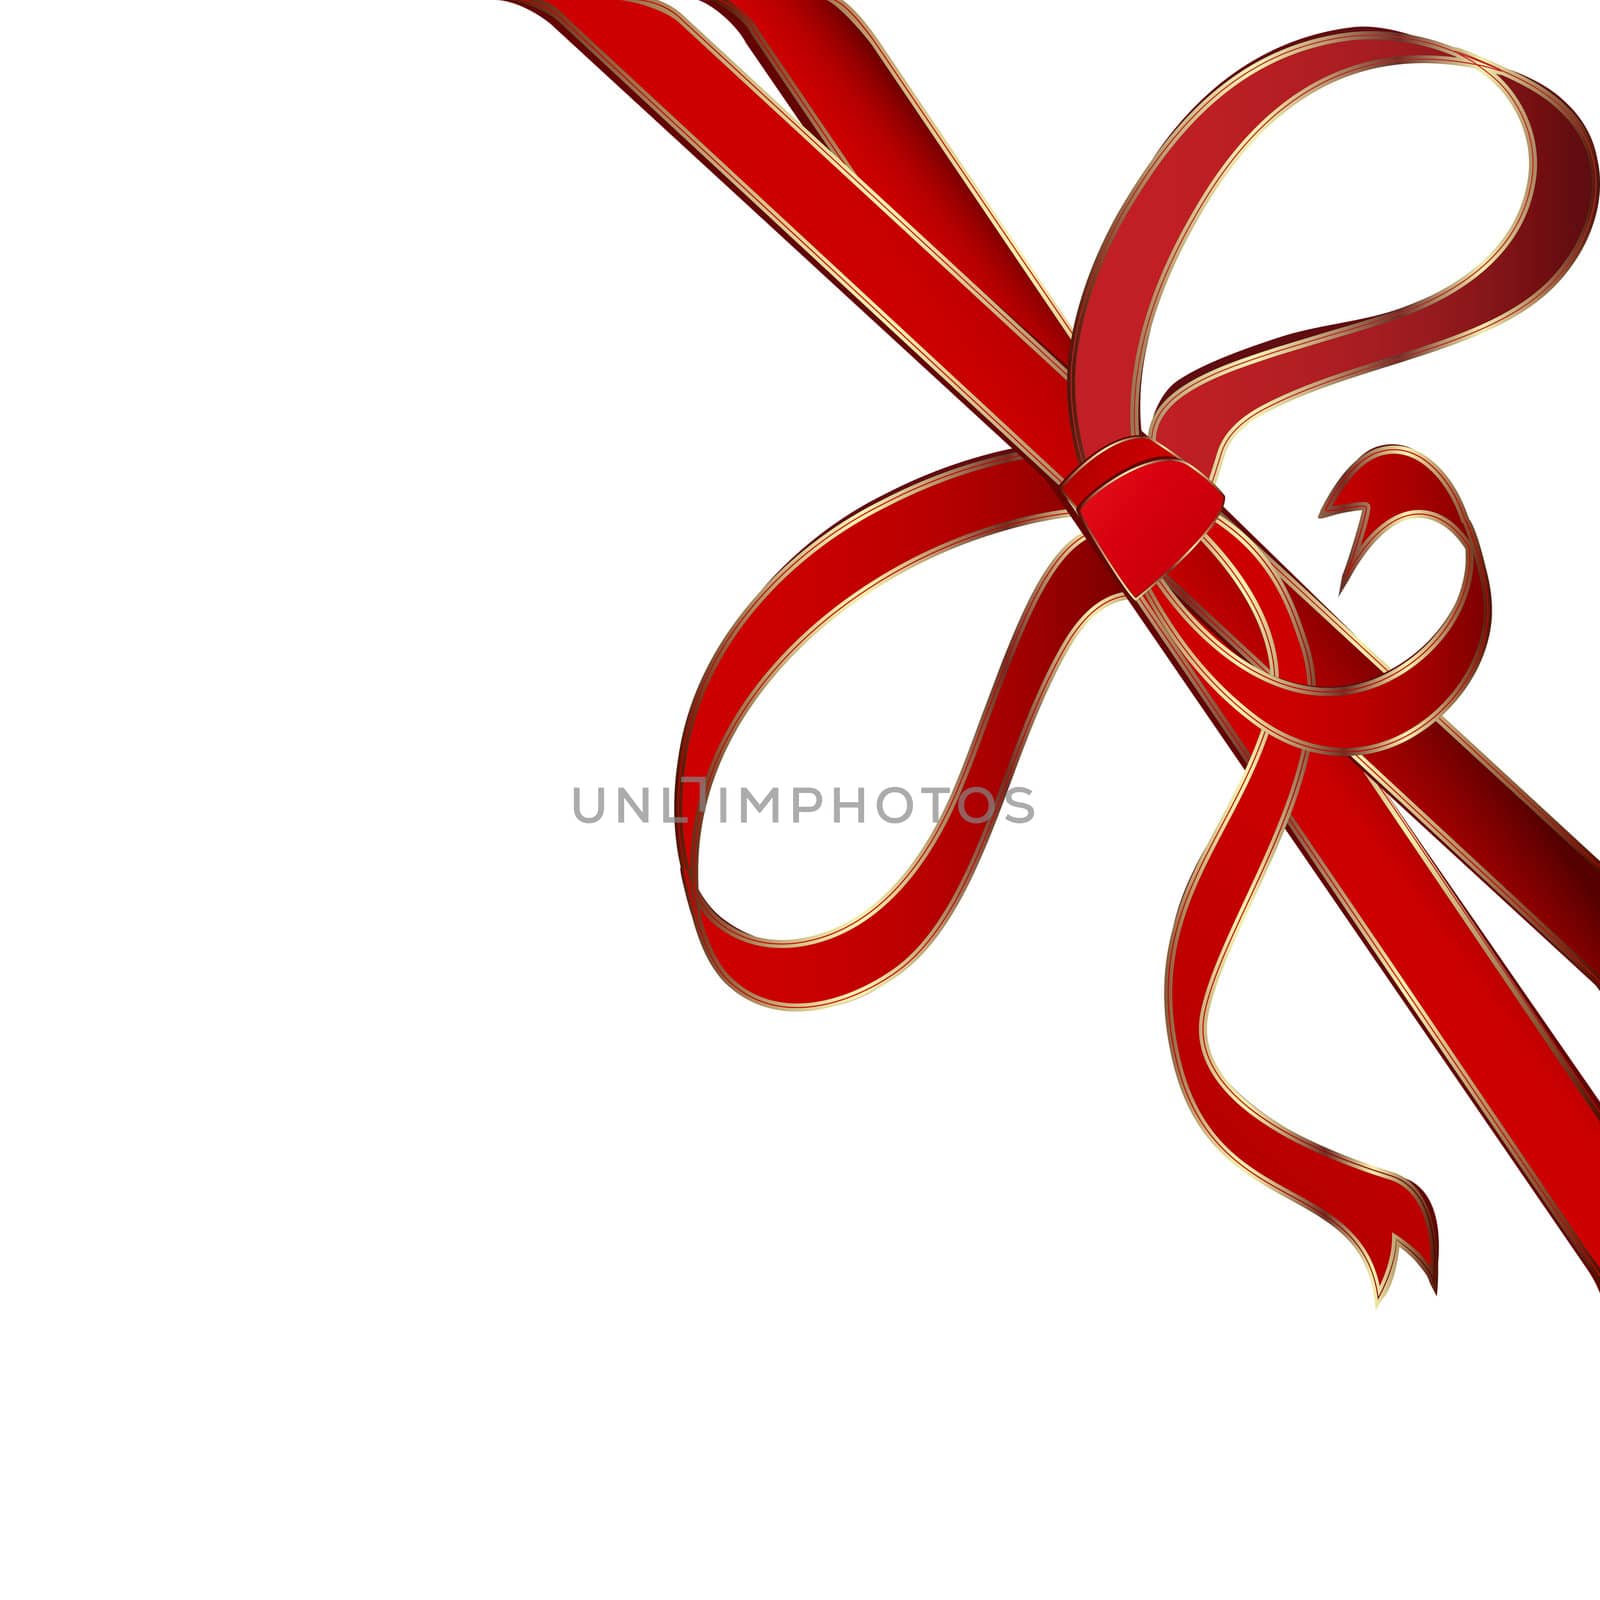 red corner ribbon by Lirch